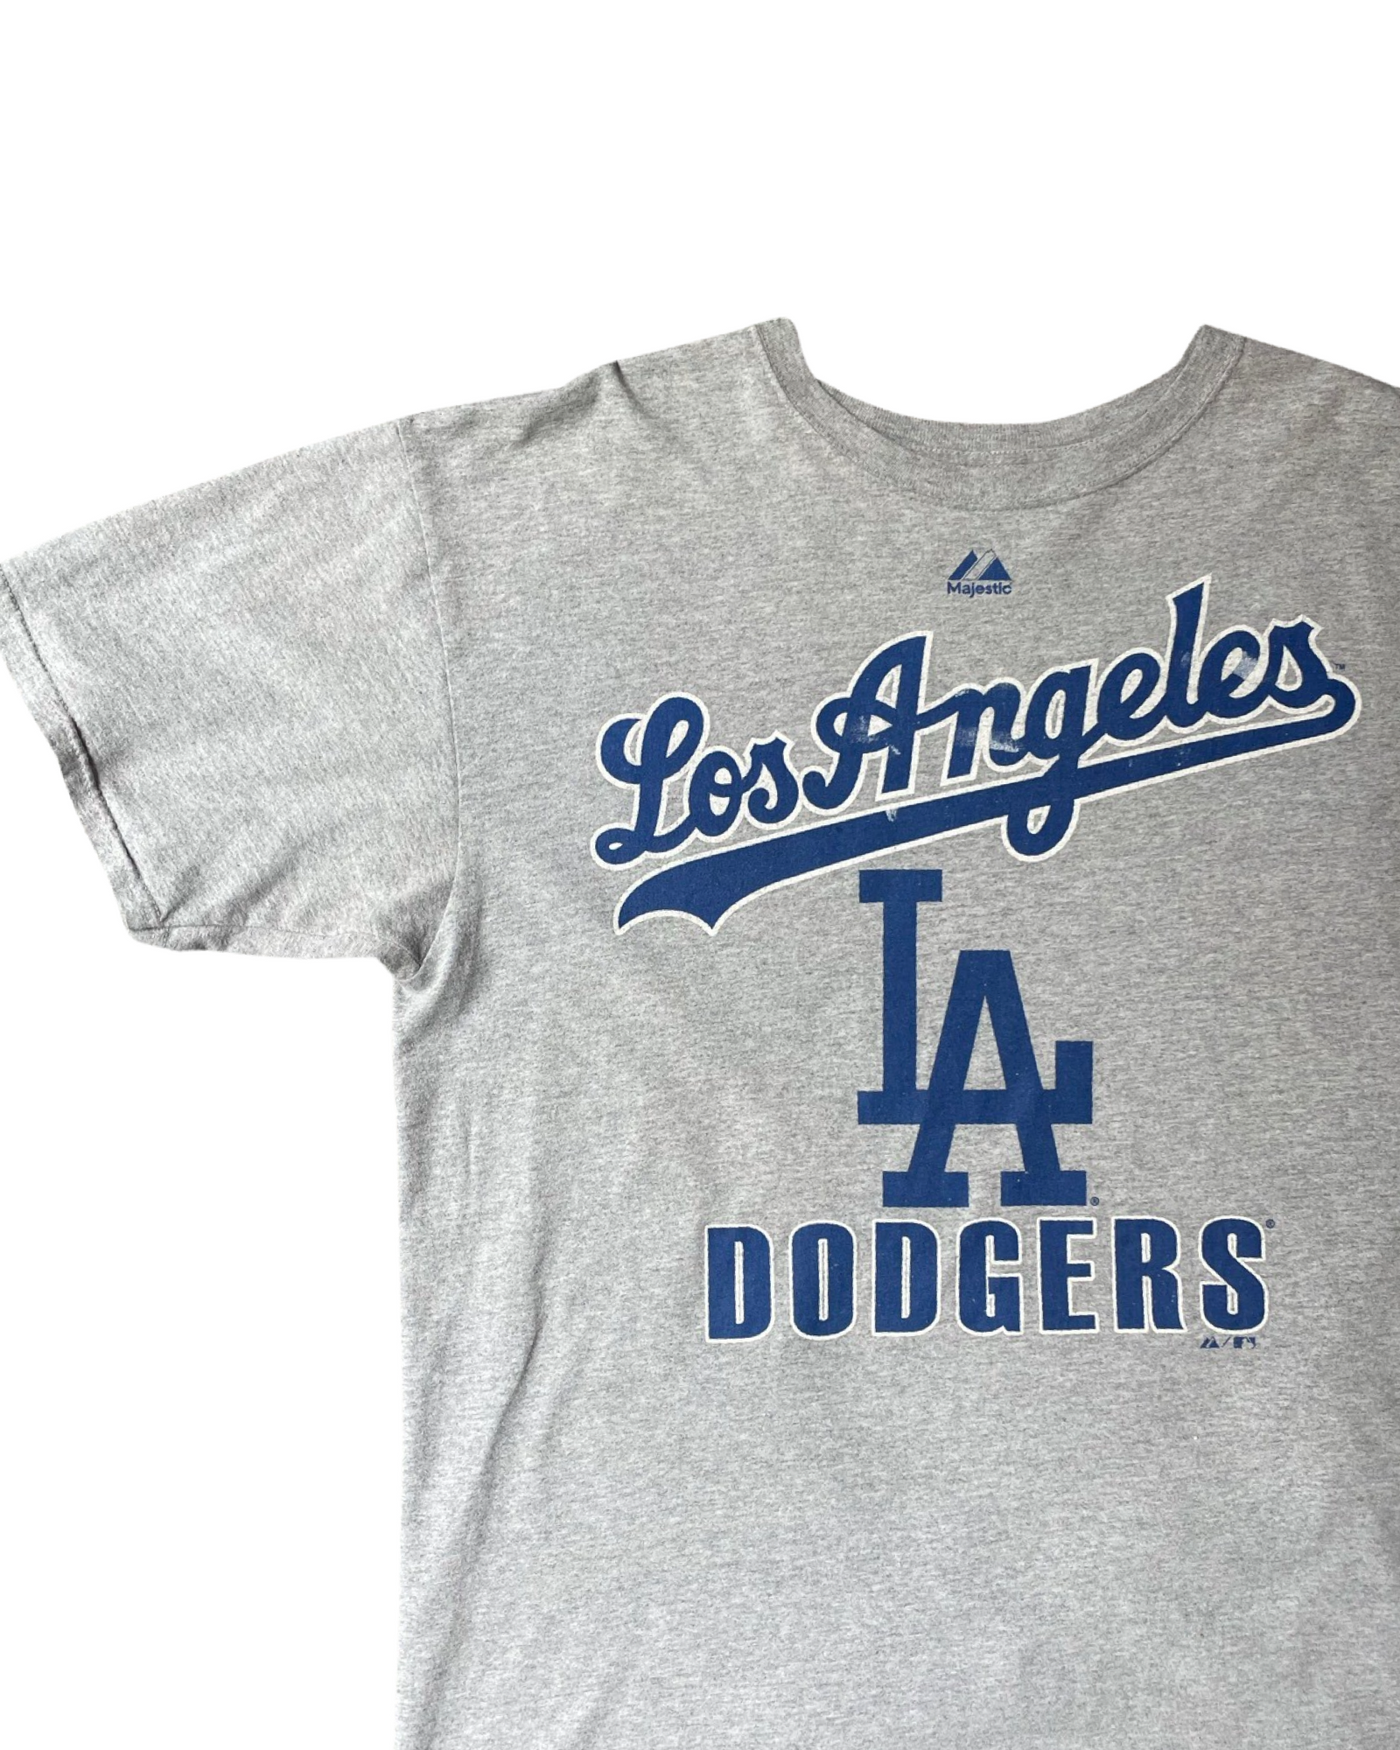 Vintage La Dodgers T-Shirt Size XL